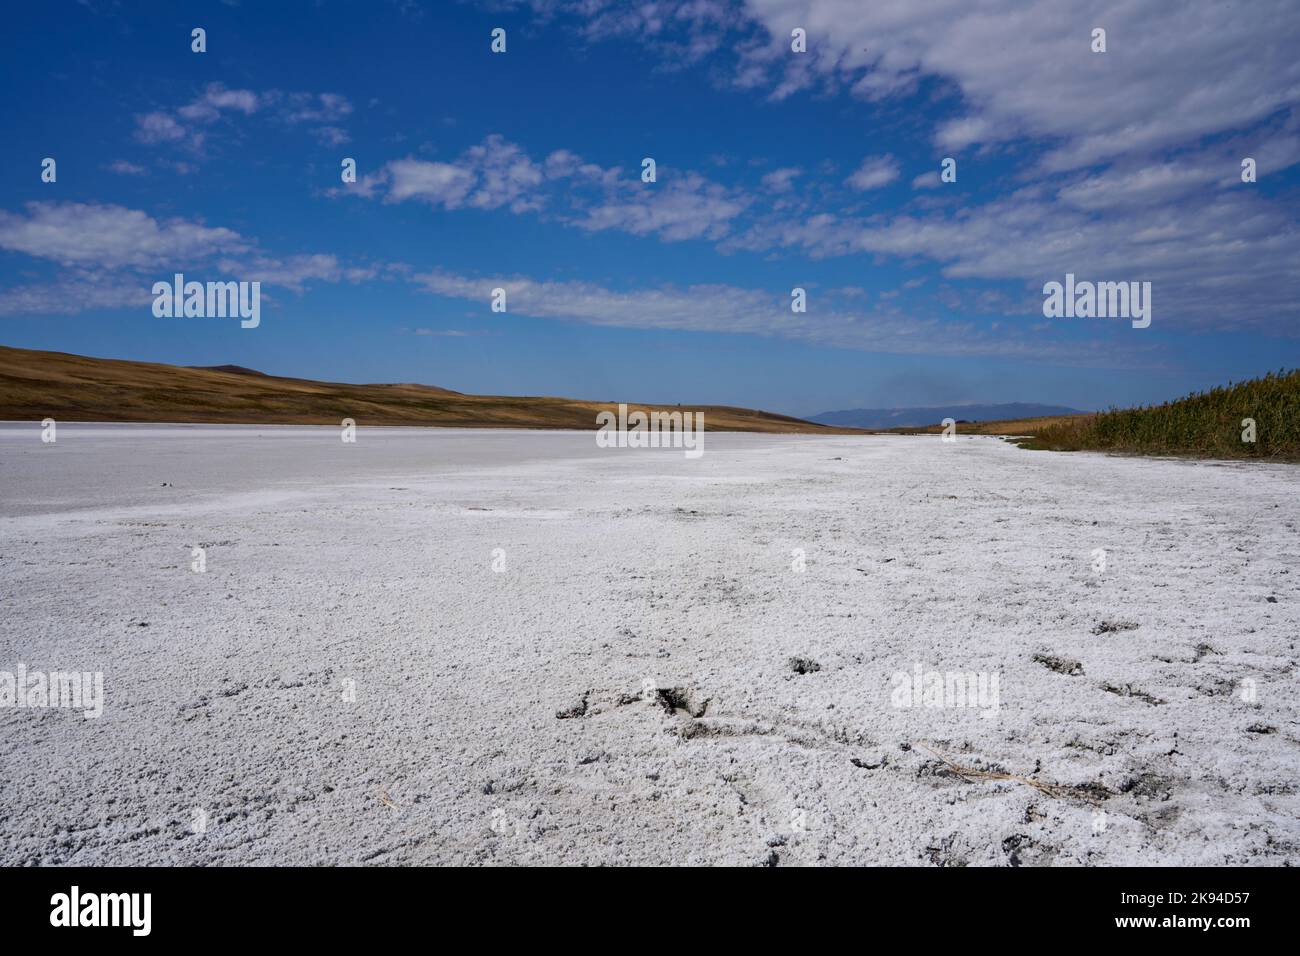 Salzkruste auf einem im Herbst ausgetrockneten Salzsee, Halbwüste, Steppenlandschaft Garedscha, Kachetien, Raion Sagaredscho, Südosten von Georgien Stock Photo